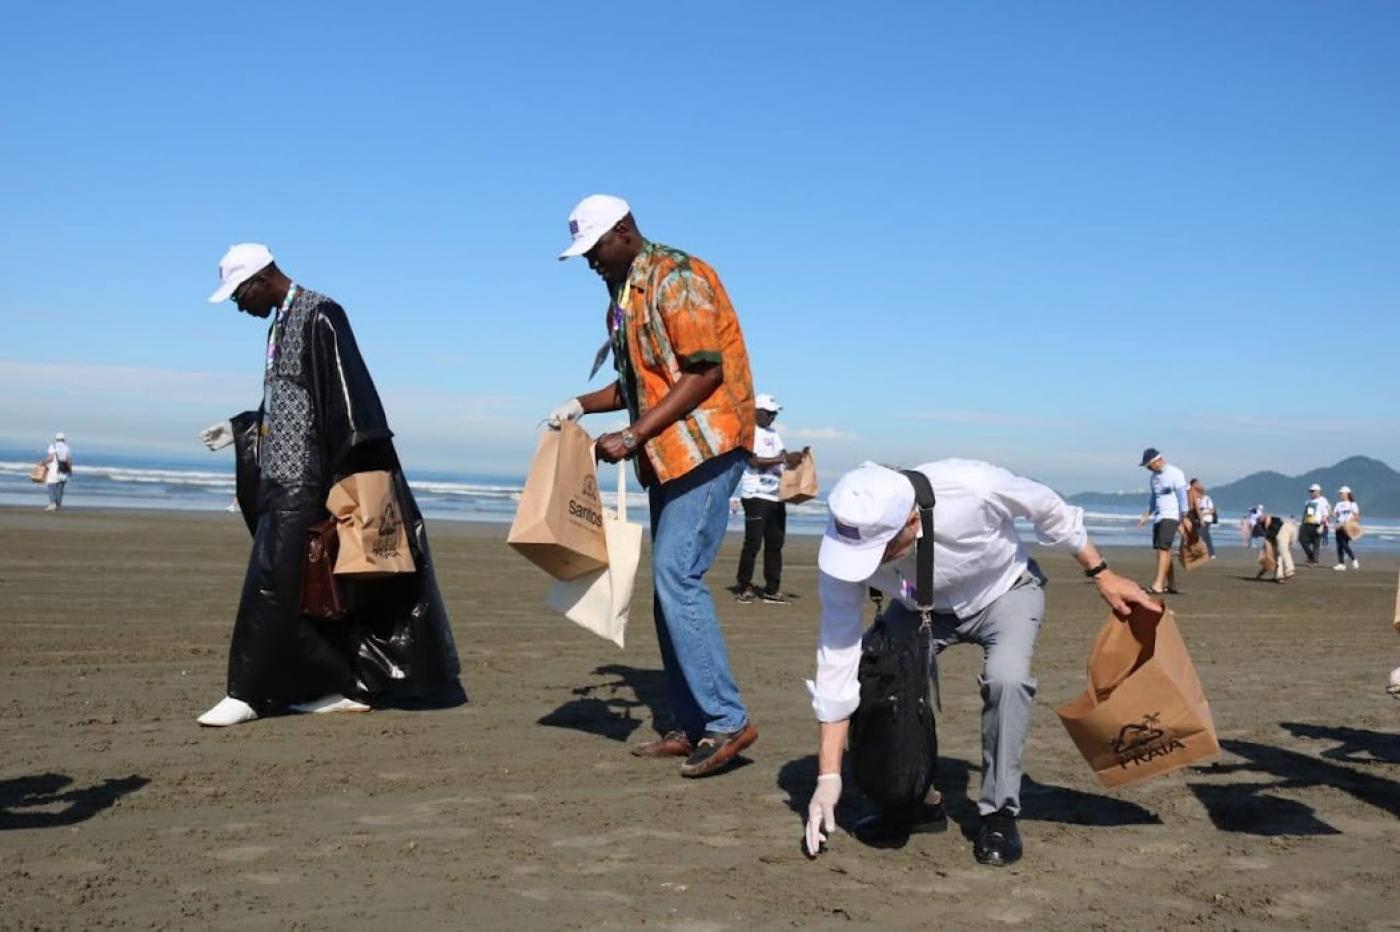 participantes da conferencia recolhem lixo na praia #paratodosverem